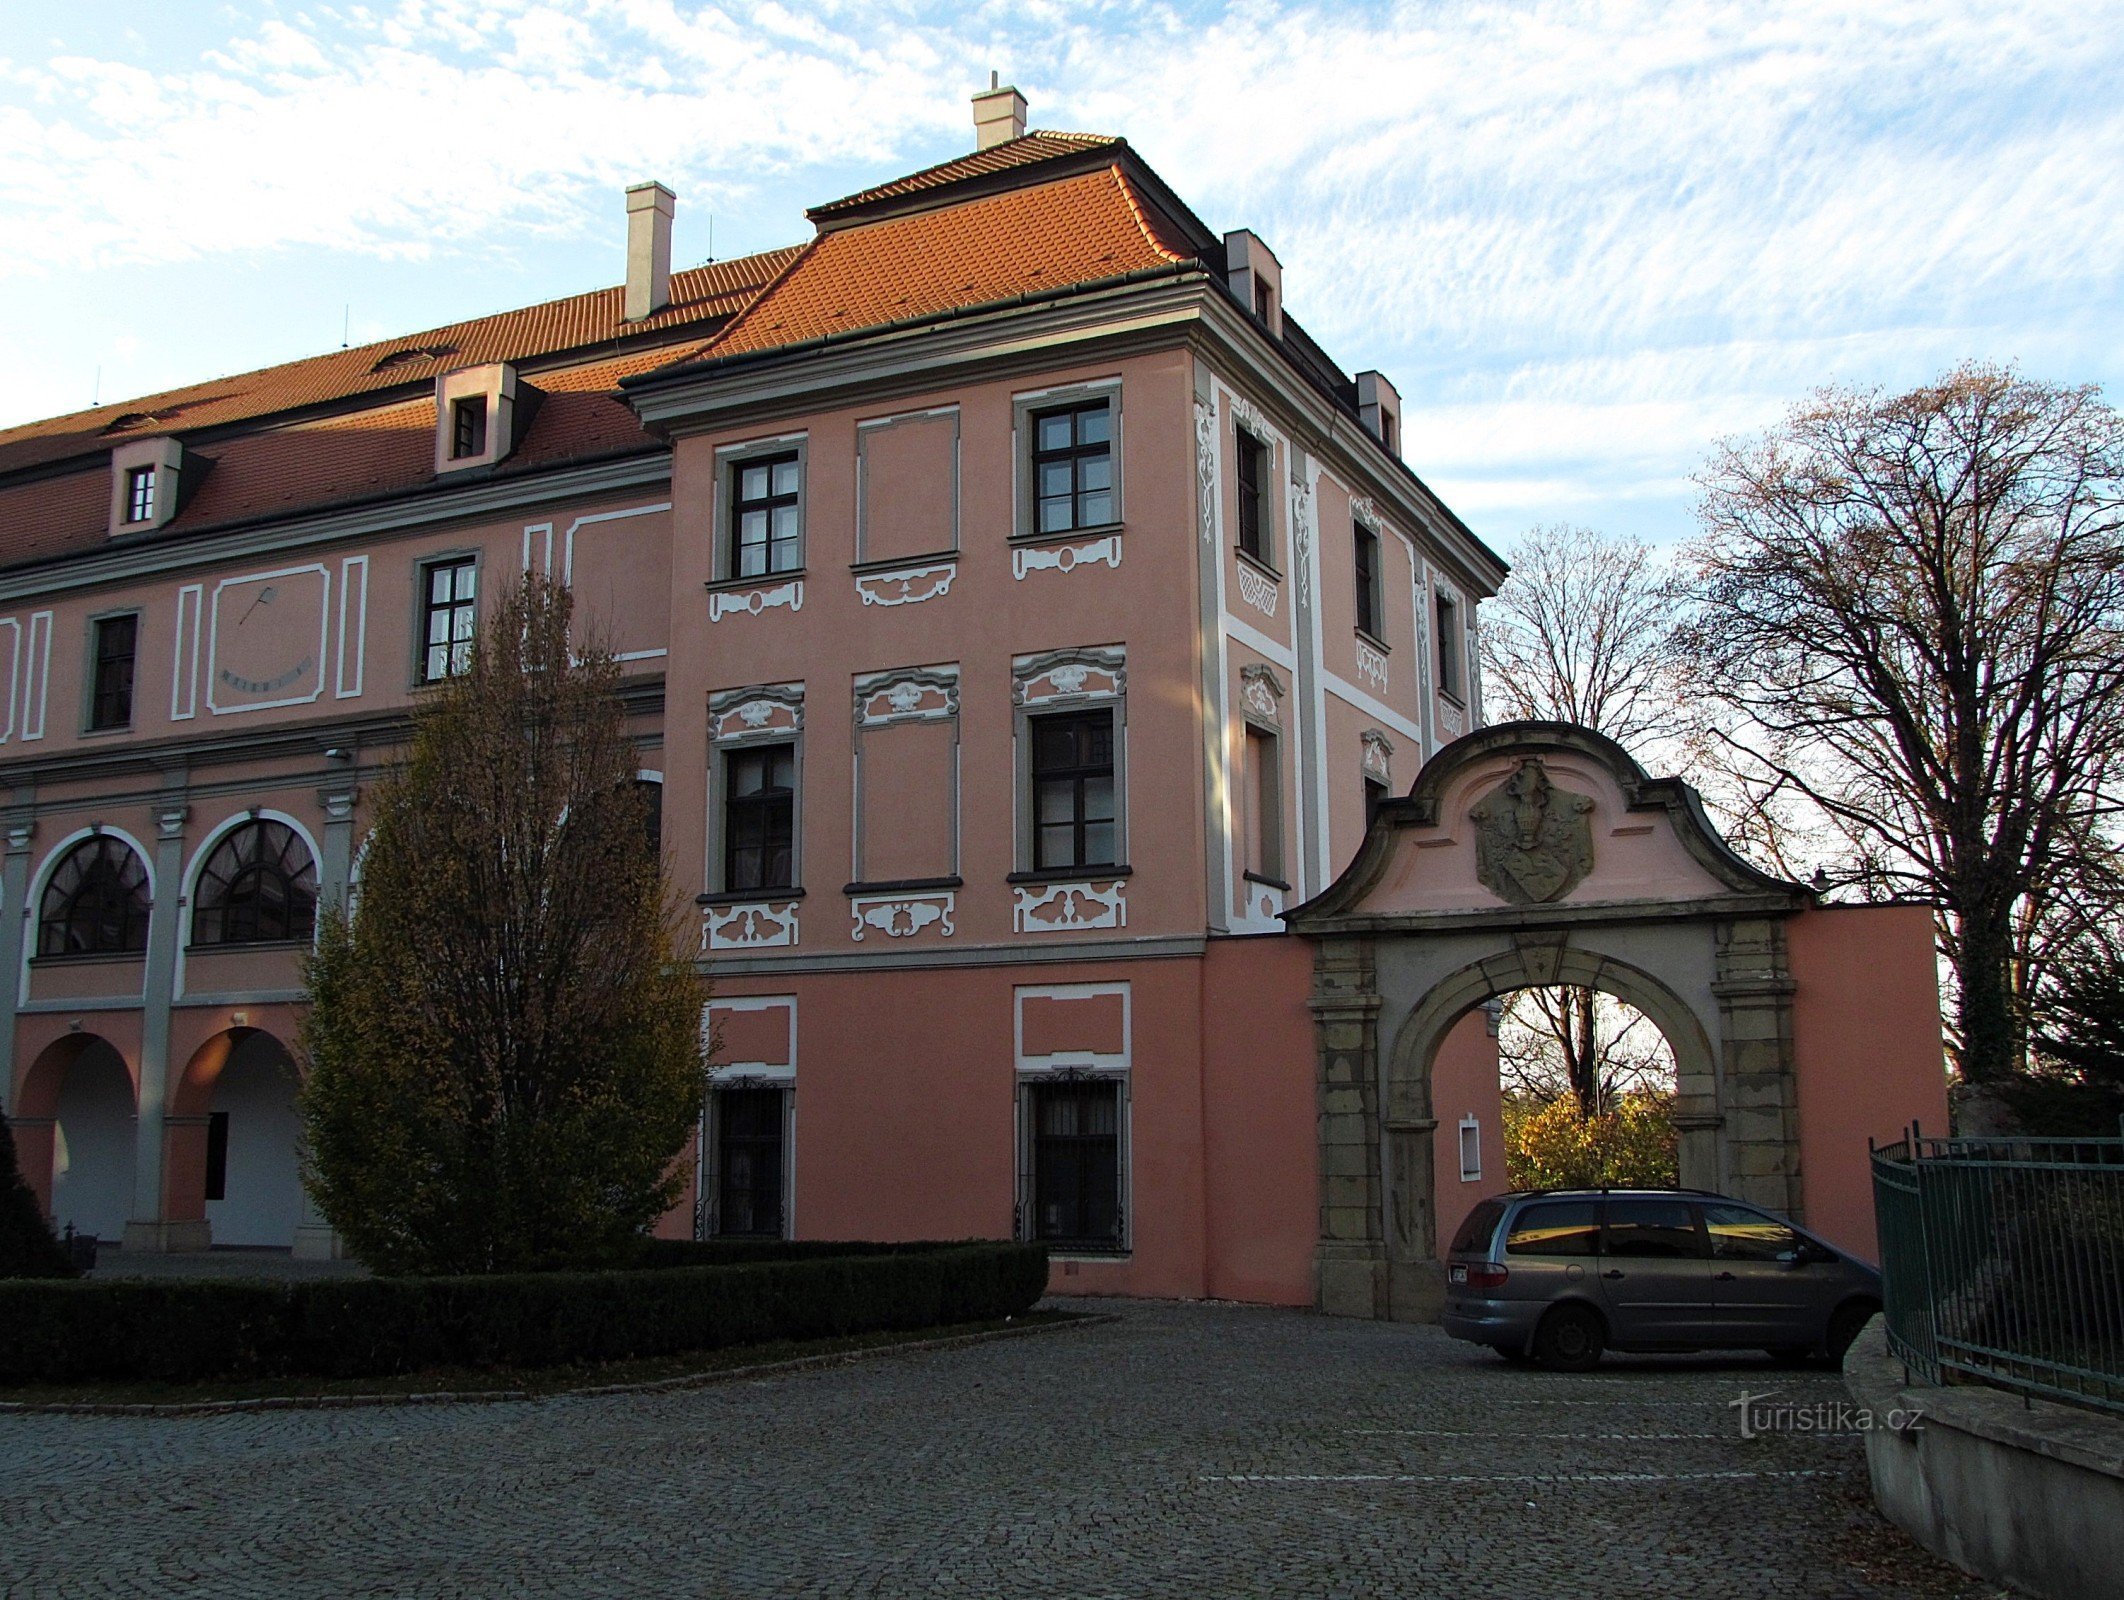 Valašské Meziříčí - Castello di Žerotín nel centro della città